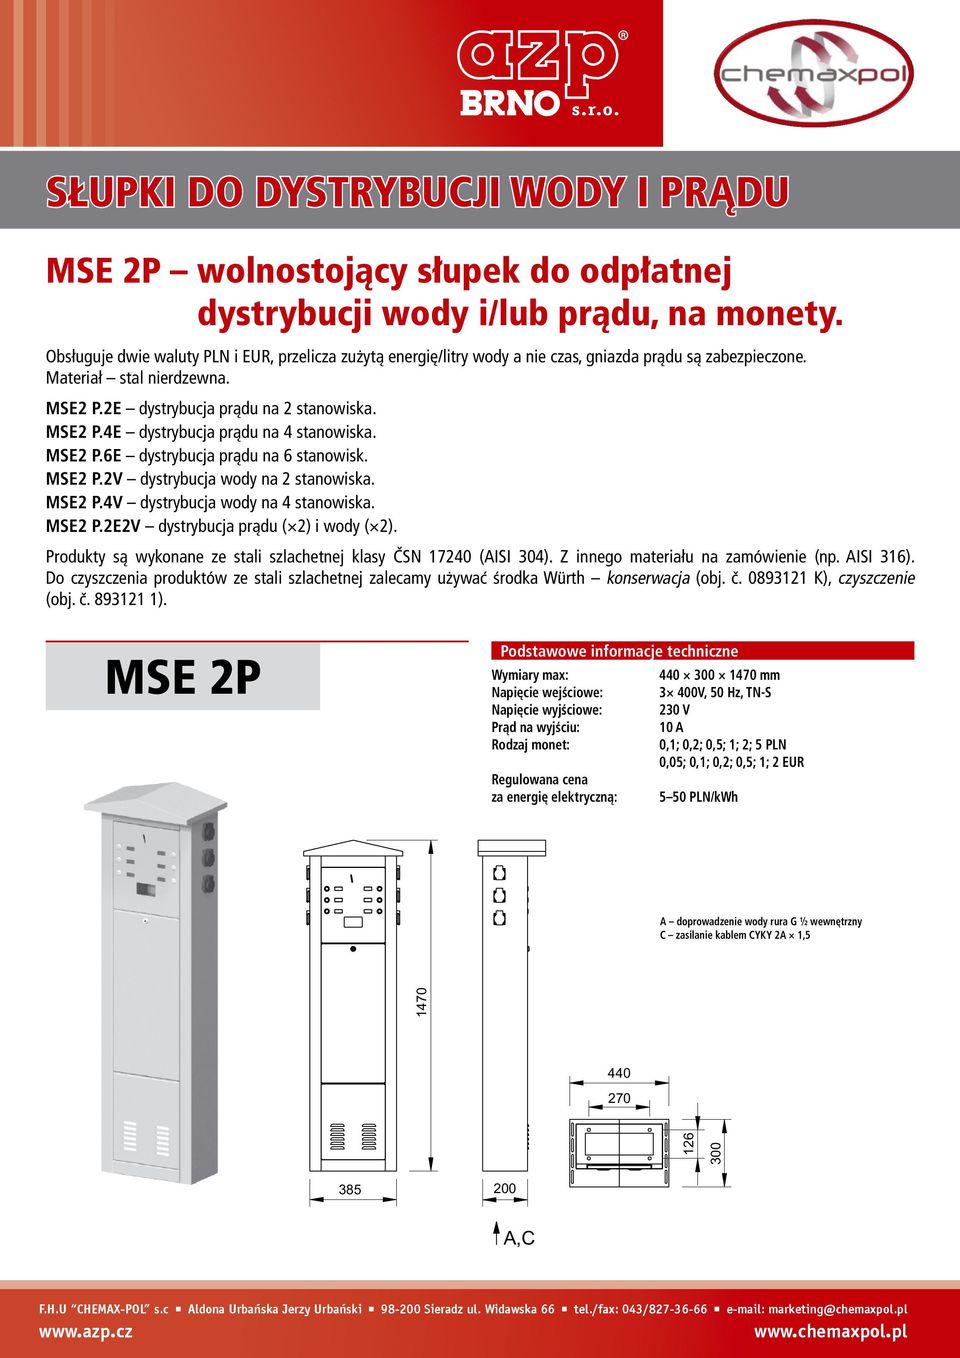 MSE2 P.6E dystrybucja prądu na 6 stanowisk. MSE2 P.2V dystrybucja wody na 2 stanowiska. MSE2 P.4V dystrybucja wody na 4 stanowiska. MSE2 P.2E2V dystrybucja prądu ( 2) i wody ( 2).